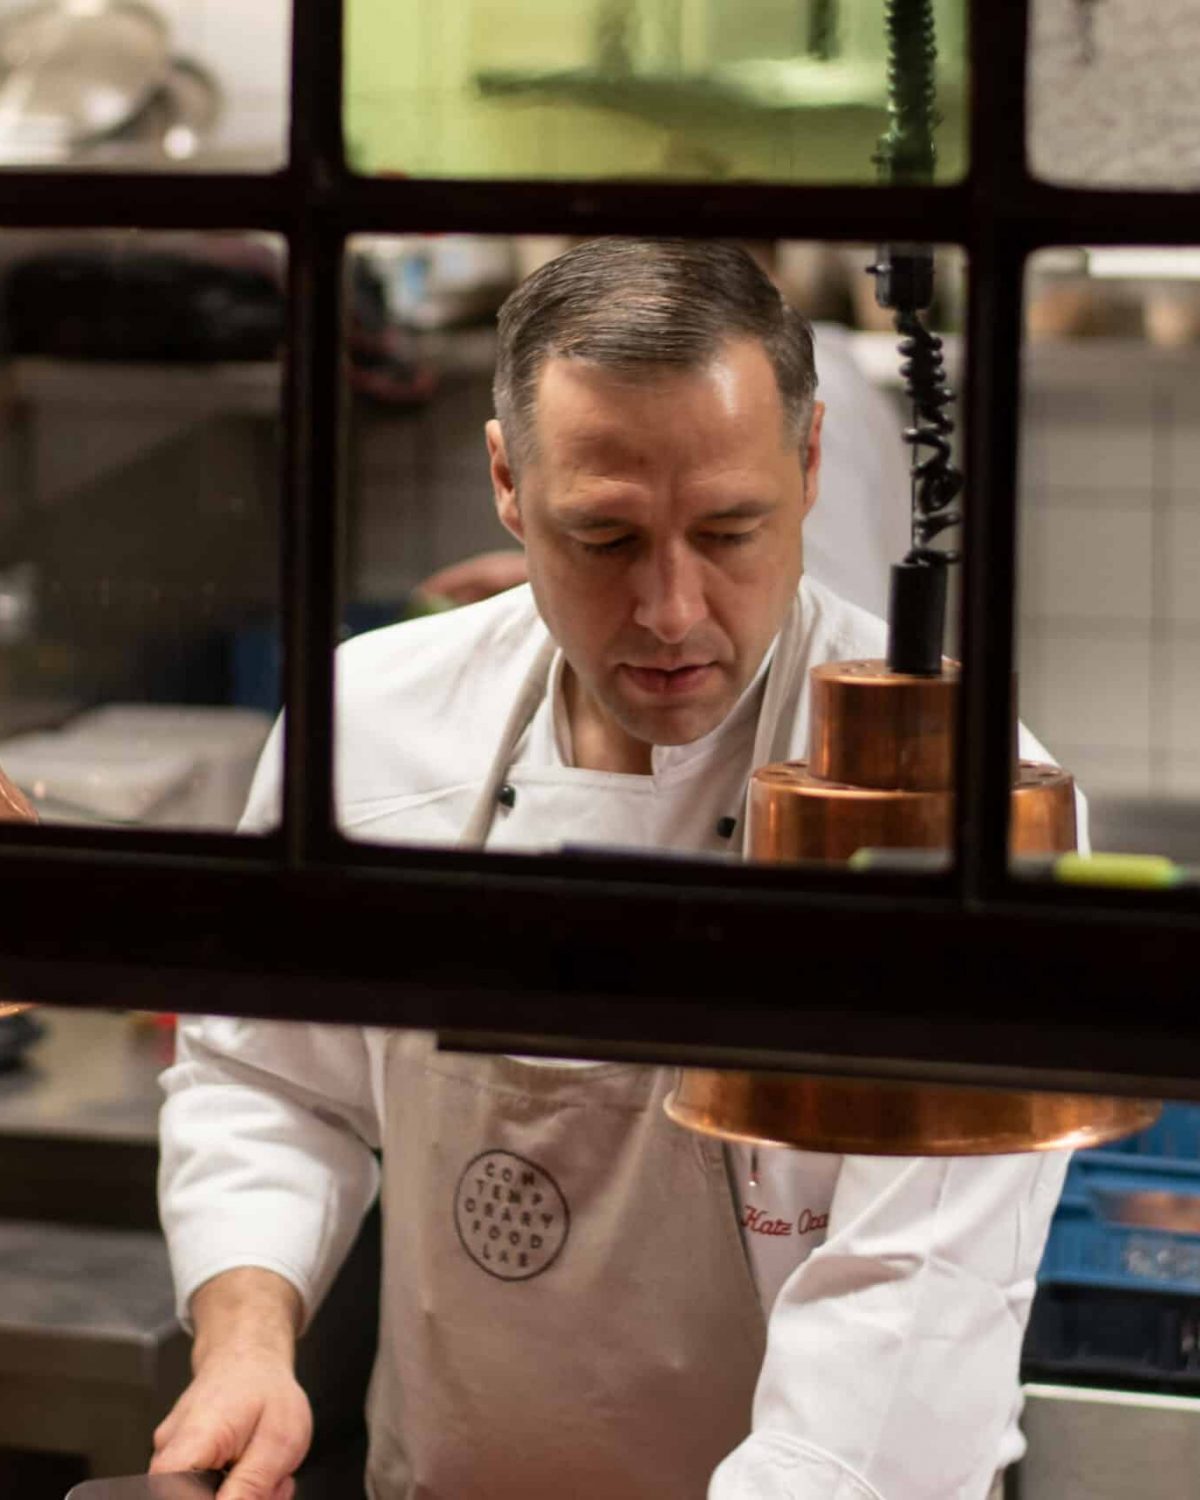 Ein engagierter Koch, fokussiert auf seine Arbeit in einer professionell ausgestatteten Küche, betrachtet durch ein Fenster mit Kupferlampen.